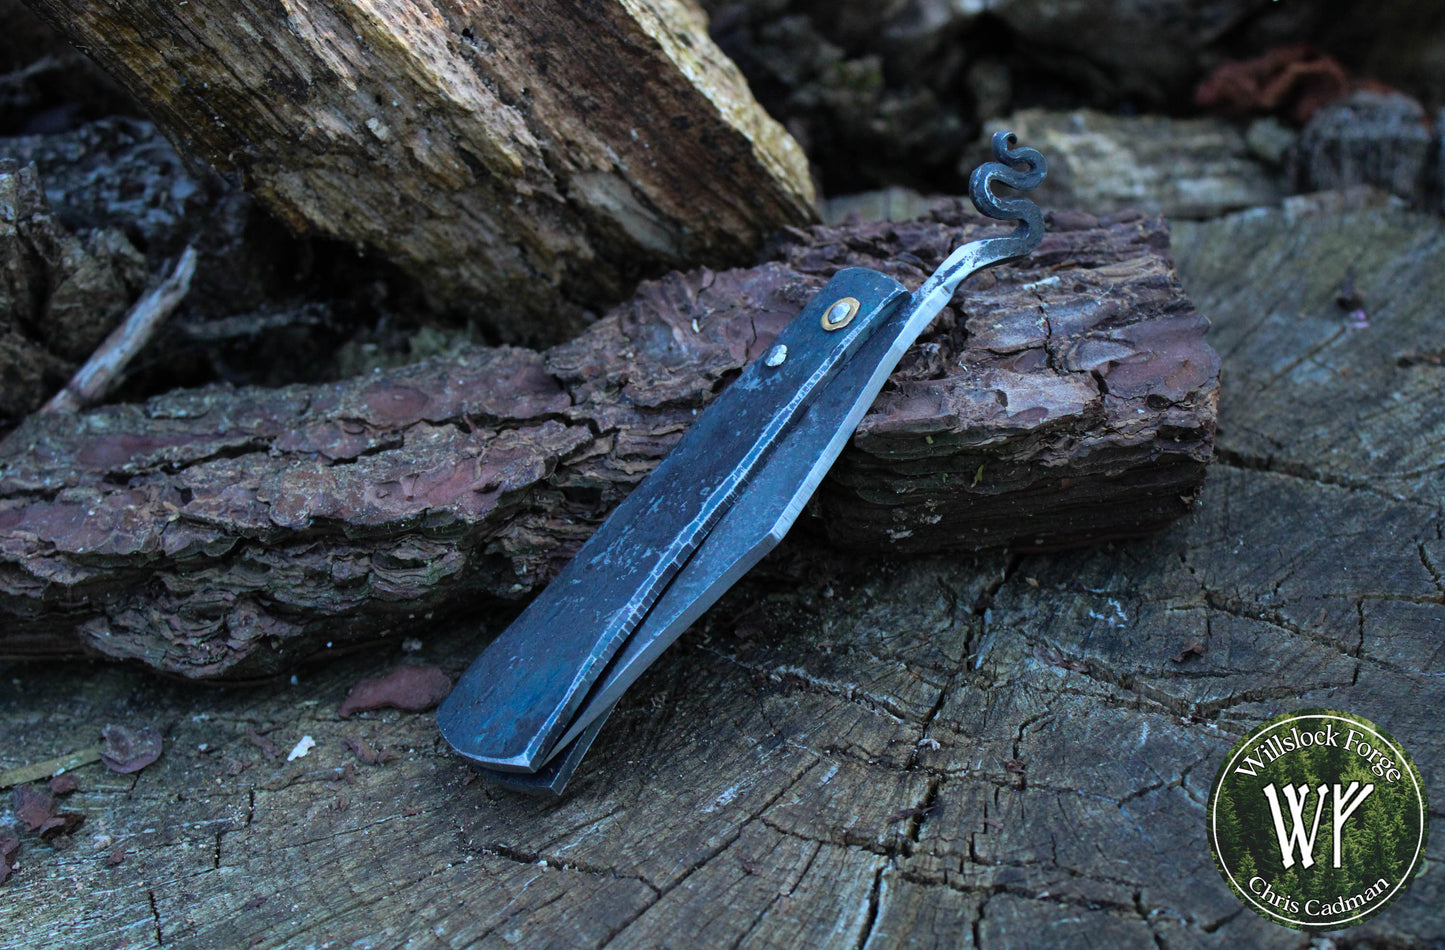 Fully forged Iron & Steel Friction Folder / Higonokami style folding knife / UK legal